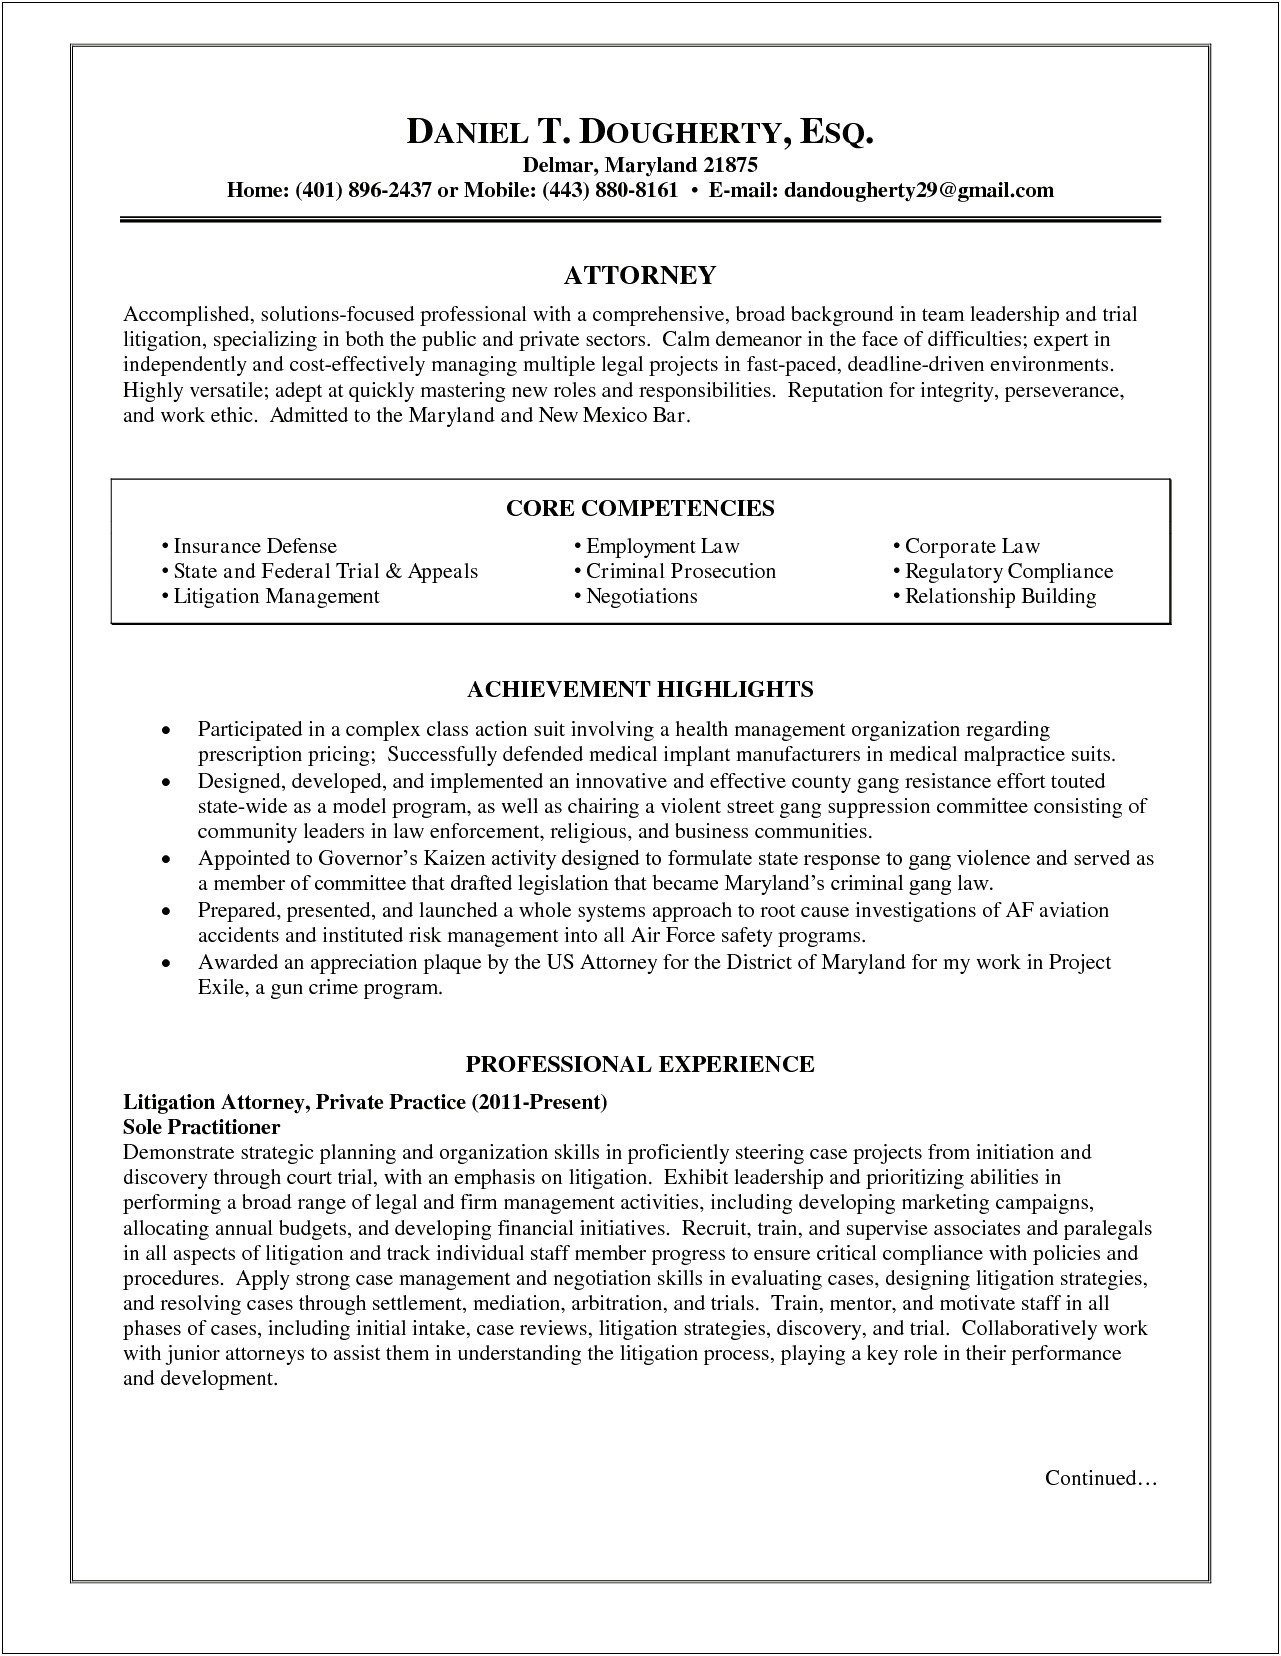 Sample Resume For Litigation Attorney